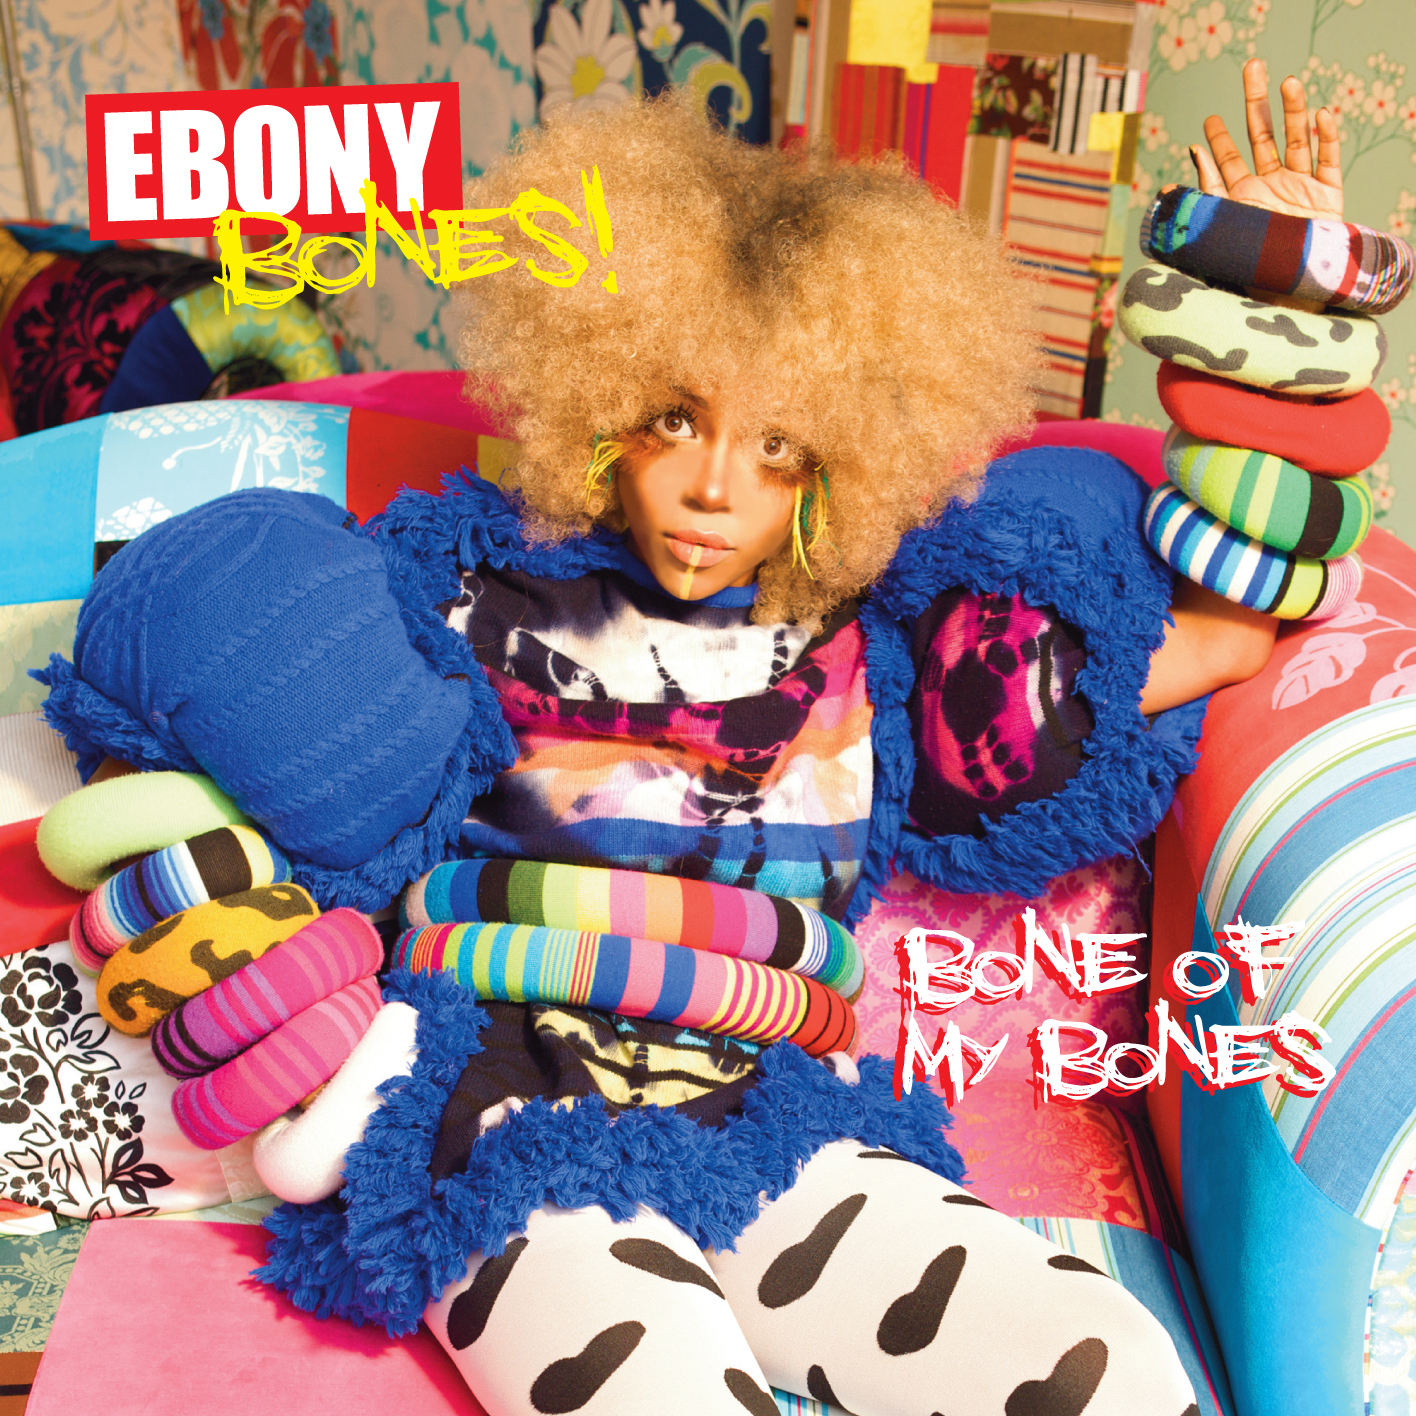 Ebony bones bone of my bones